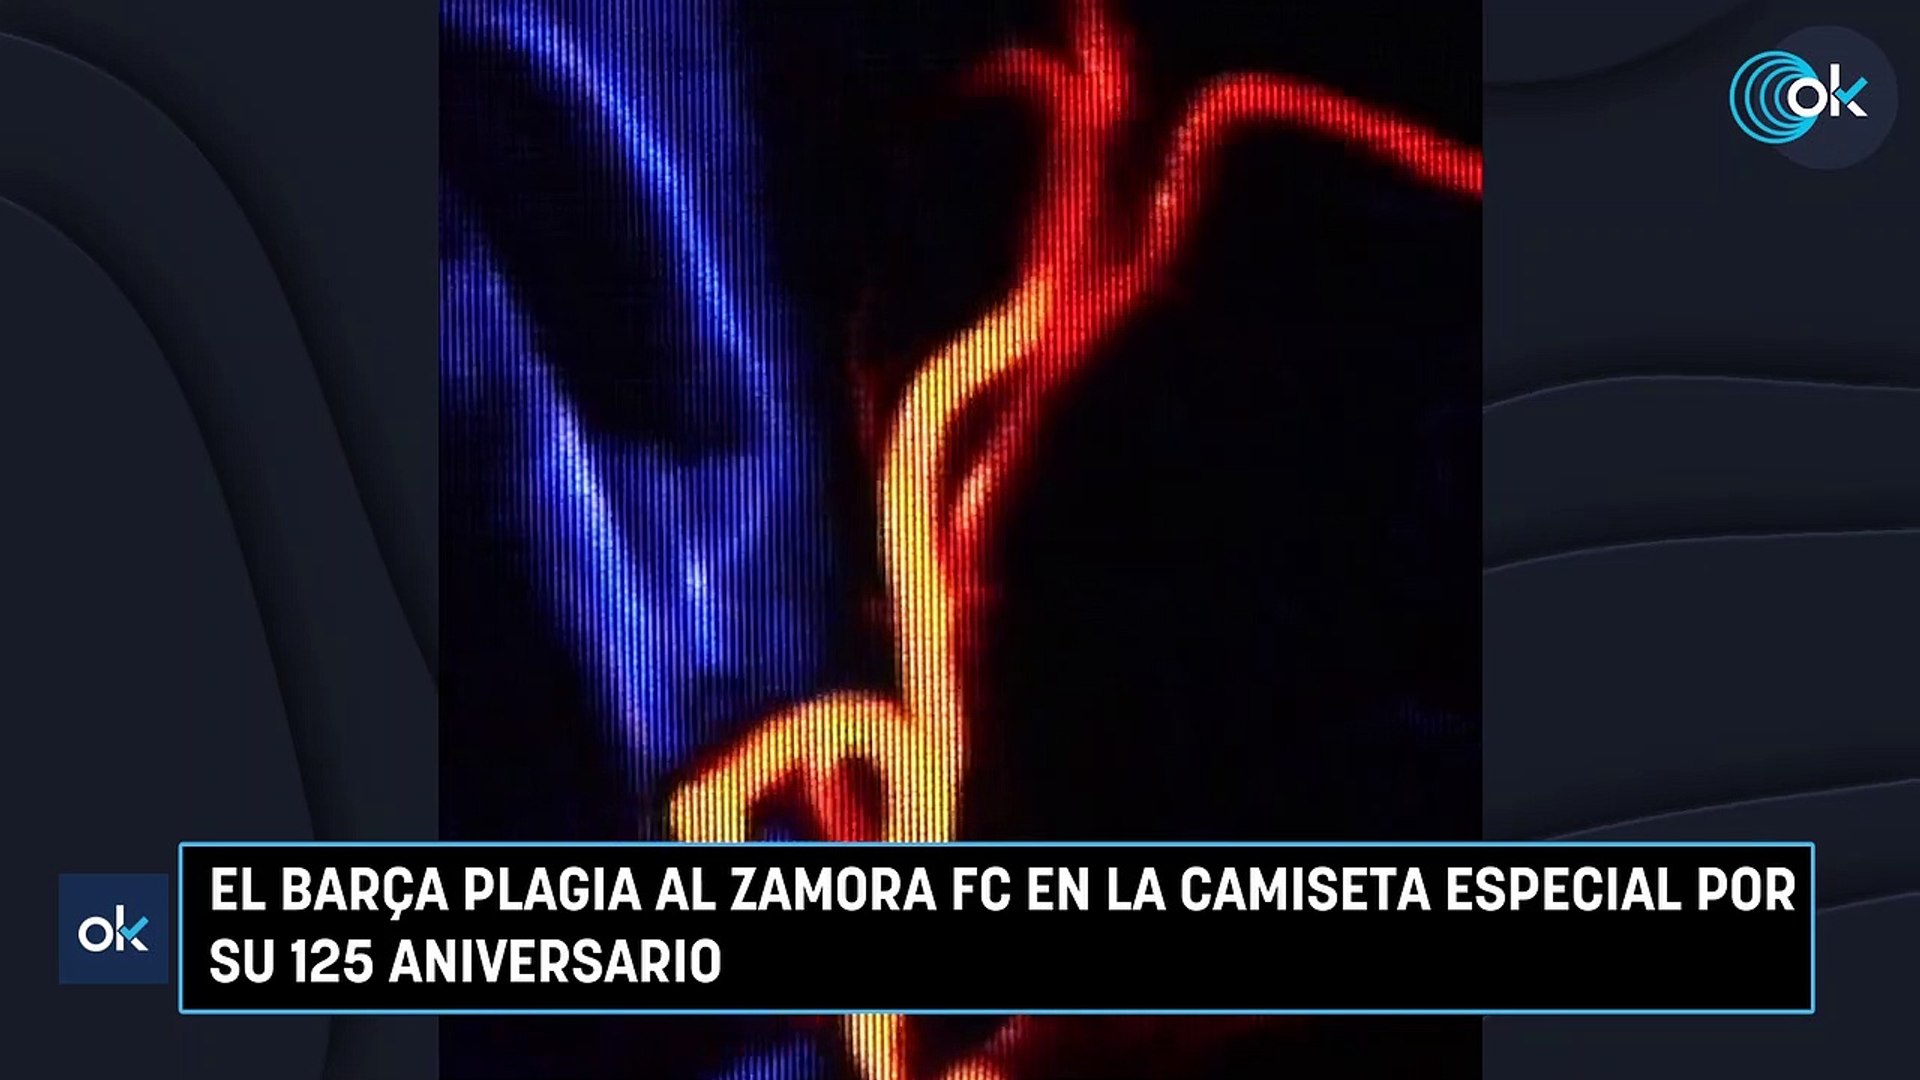 PLAGIO CAMISETA BARÇA ZAMORA  ¿Ha plagiado el Barça la camiseta  anatómica al Zamora CF?